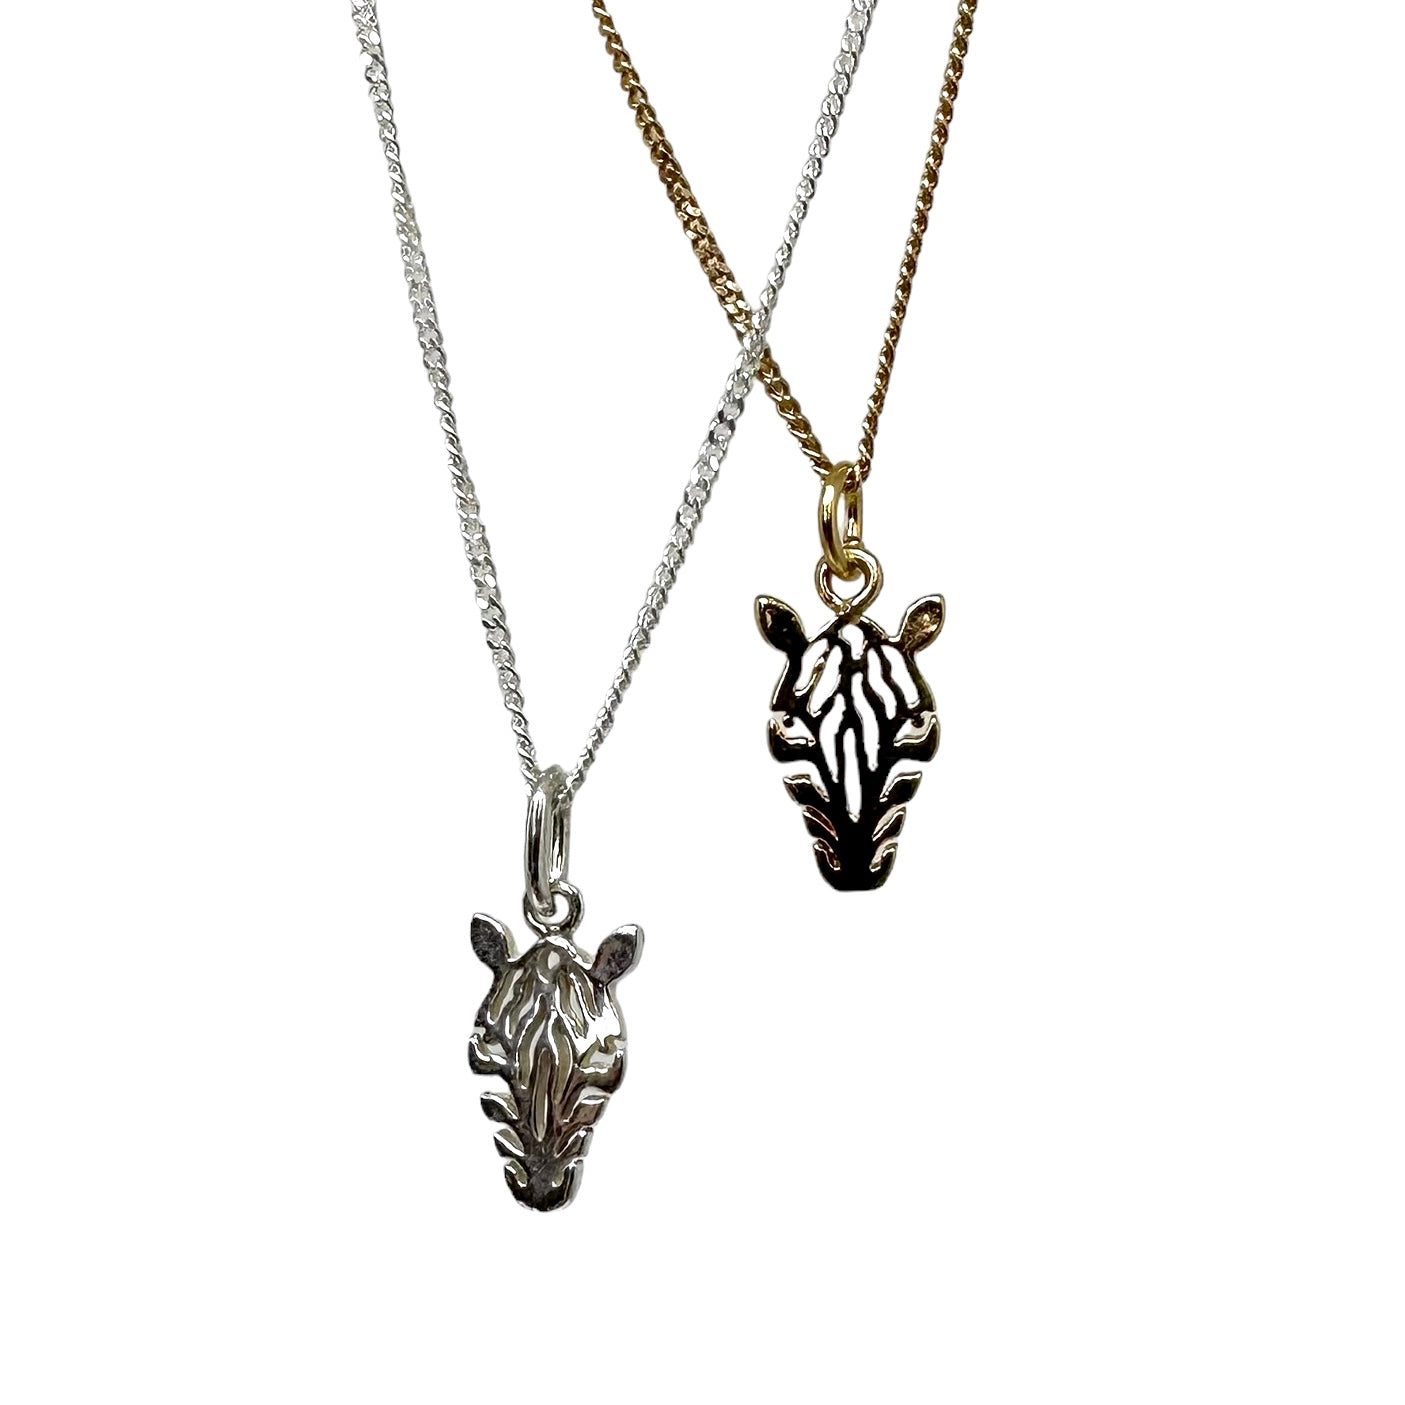 Zebra (necklace charm)